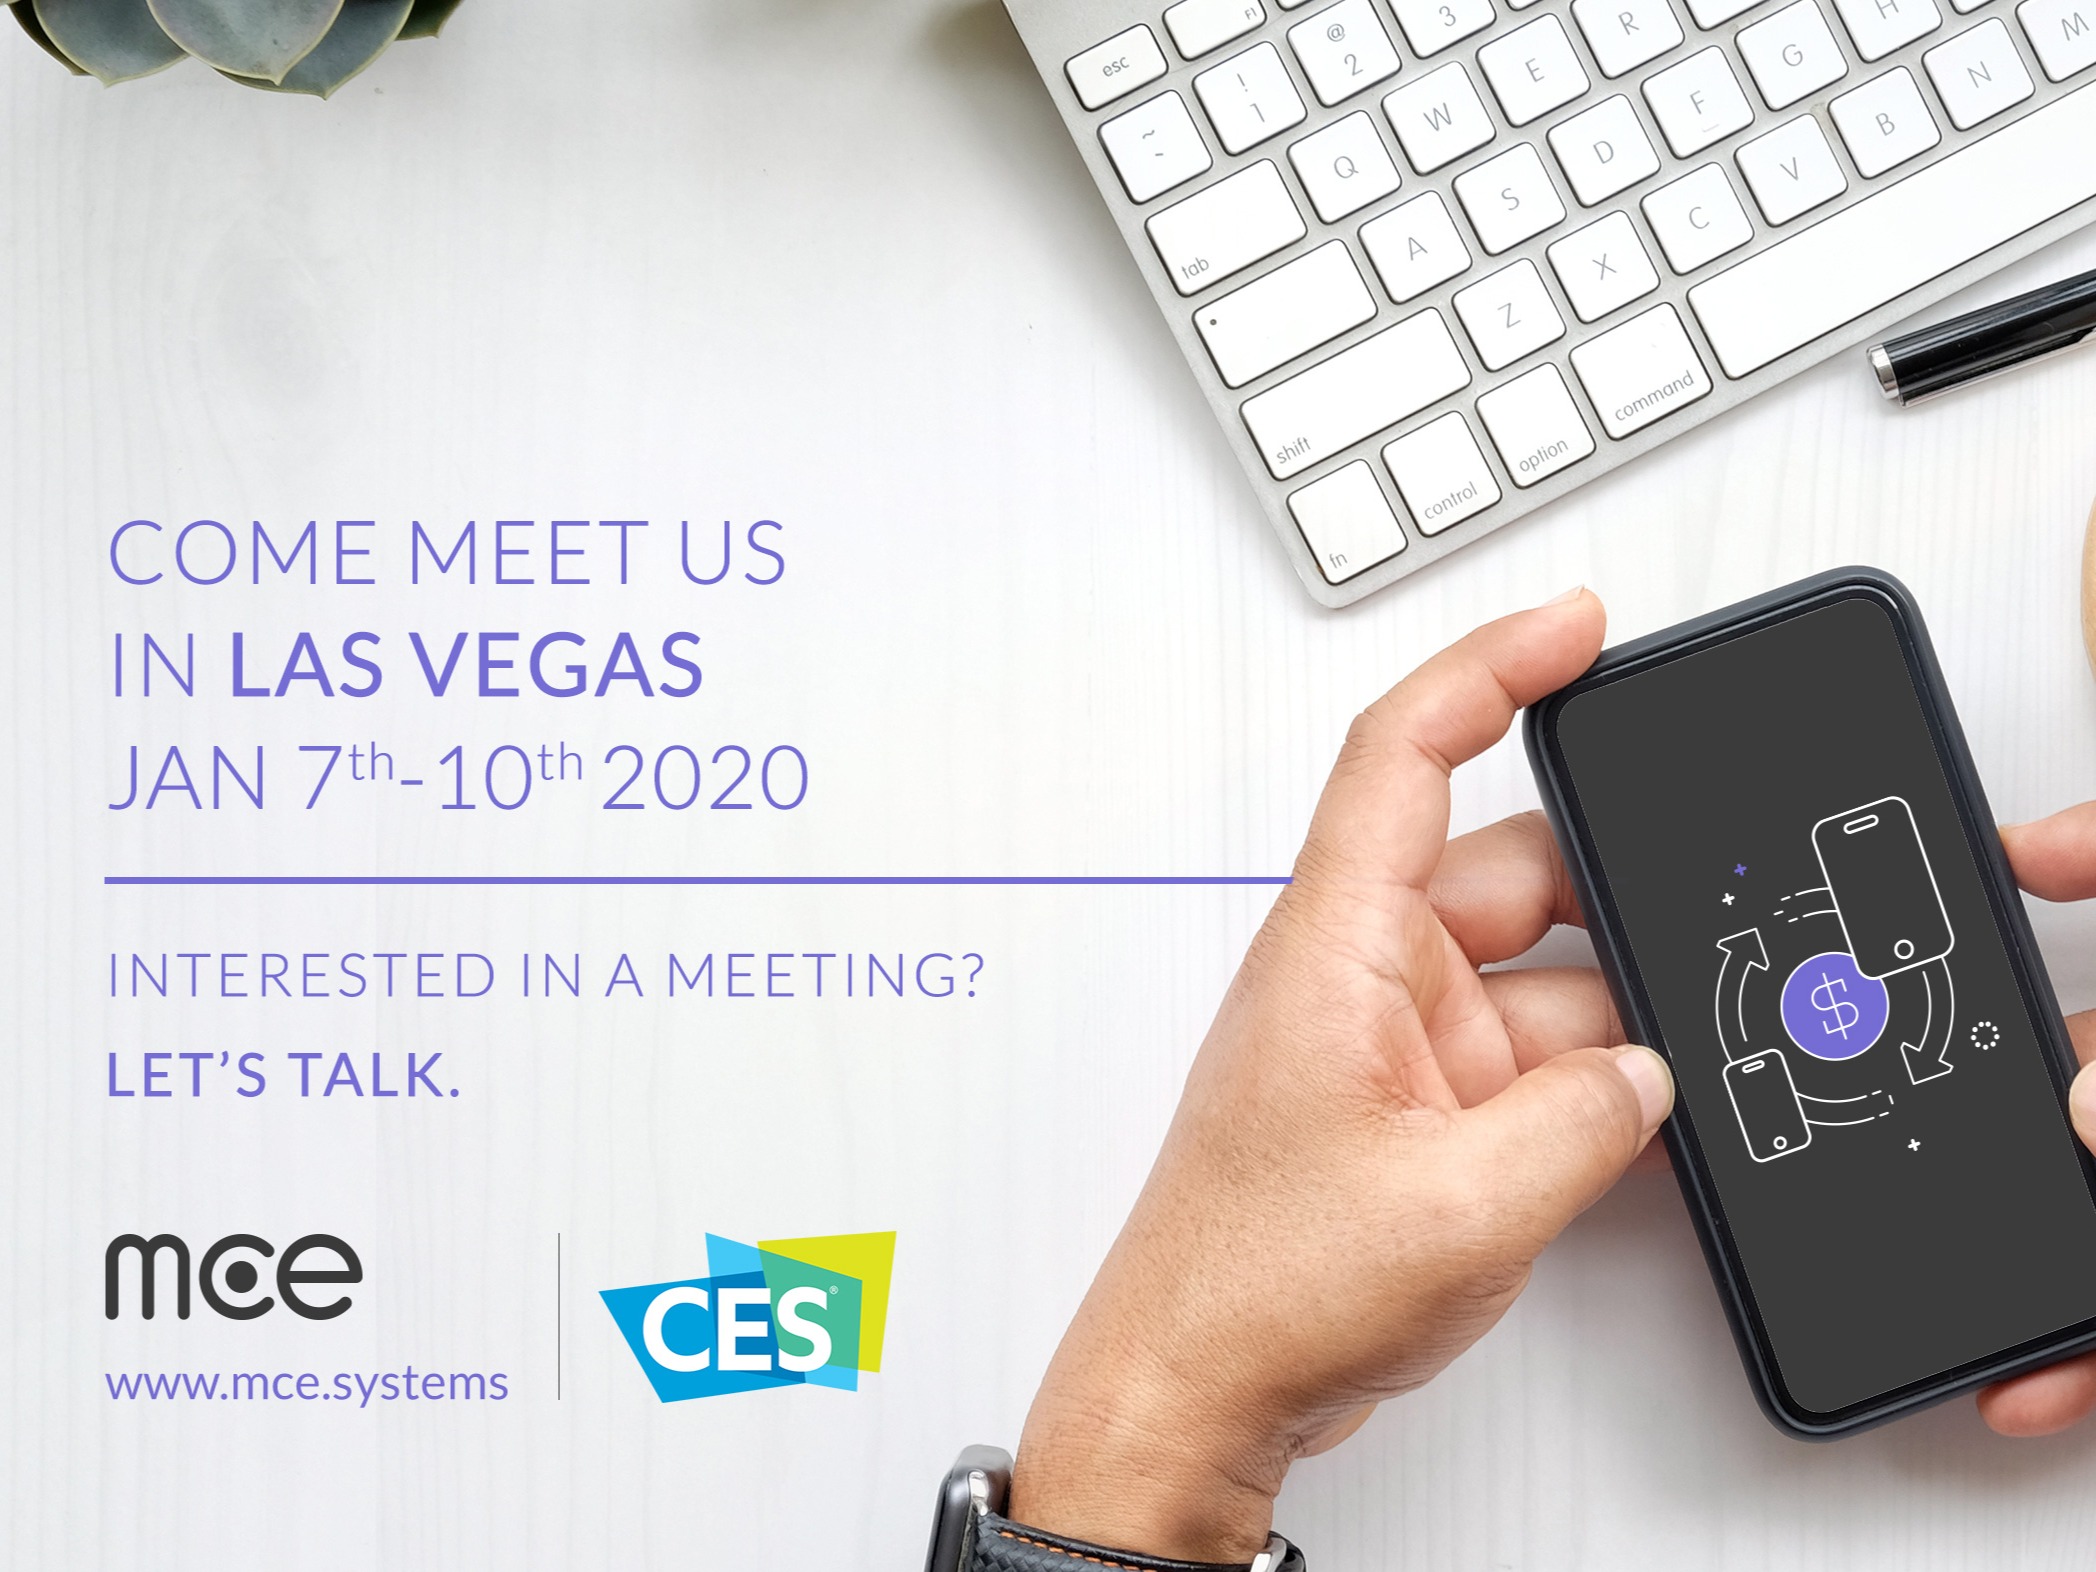 Meet mce at CES 2020